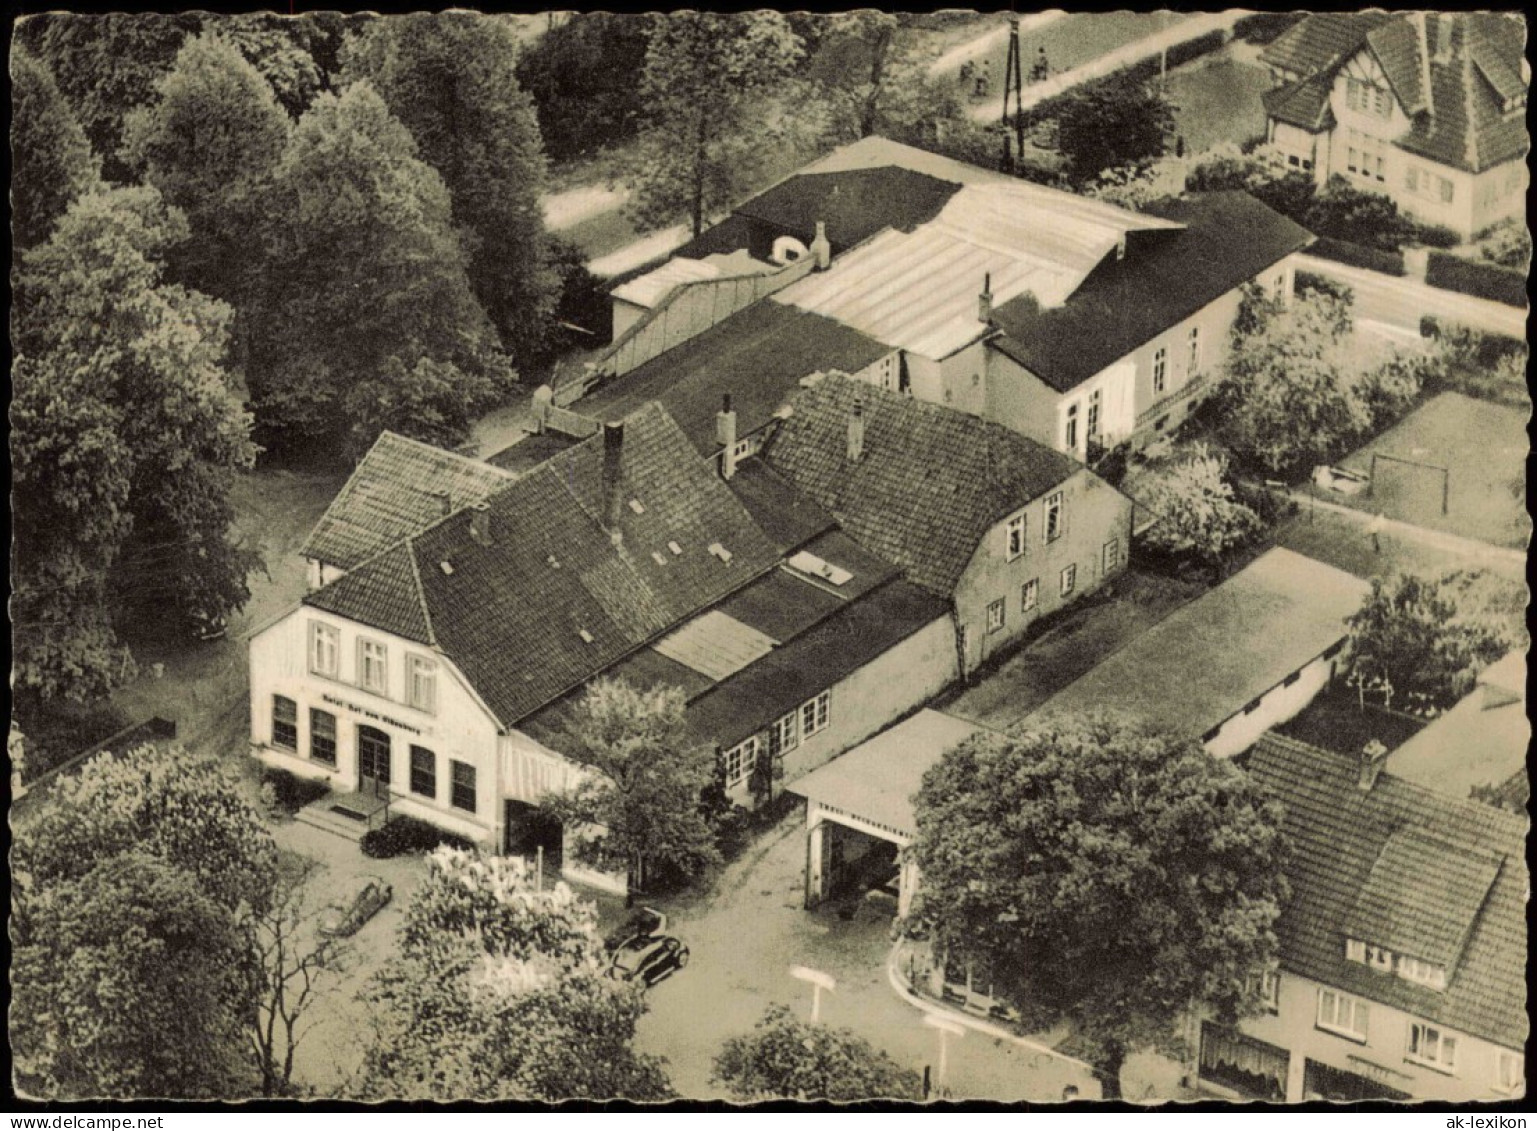 Ansichtskarte Rastede Luftbild Hotel Hof Von Oldenburg 1963 - Rastede